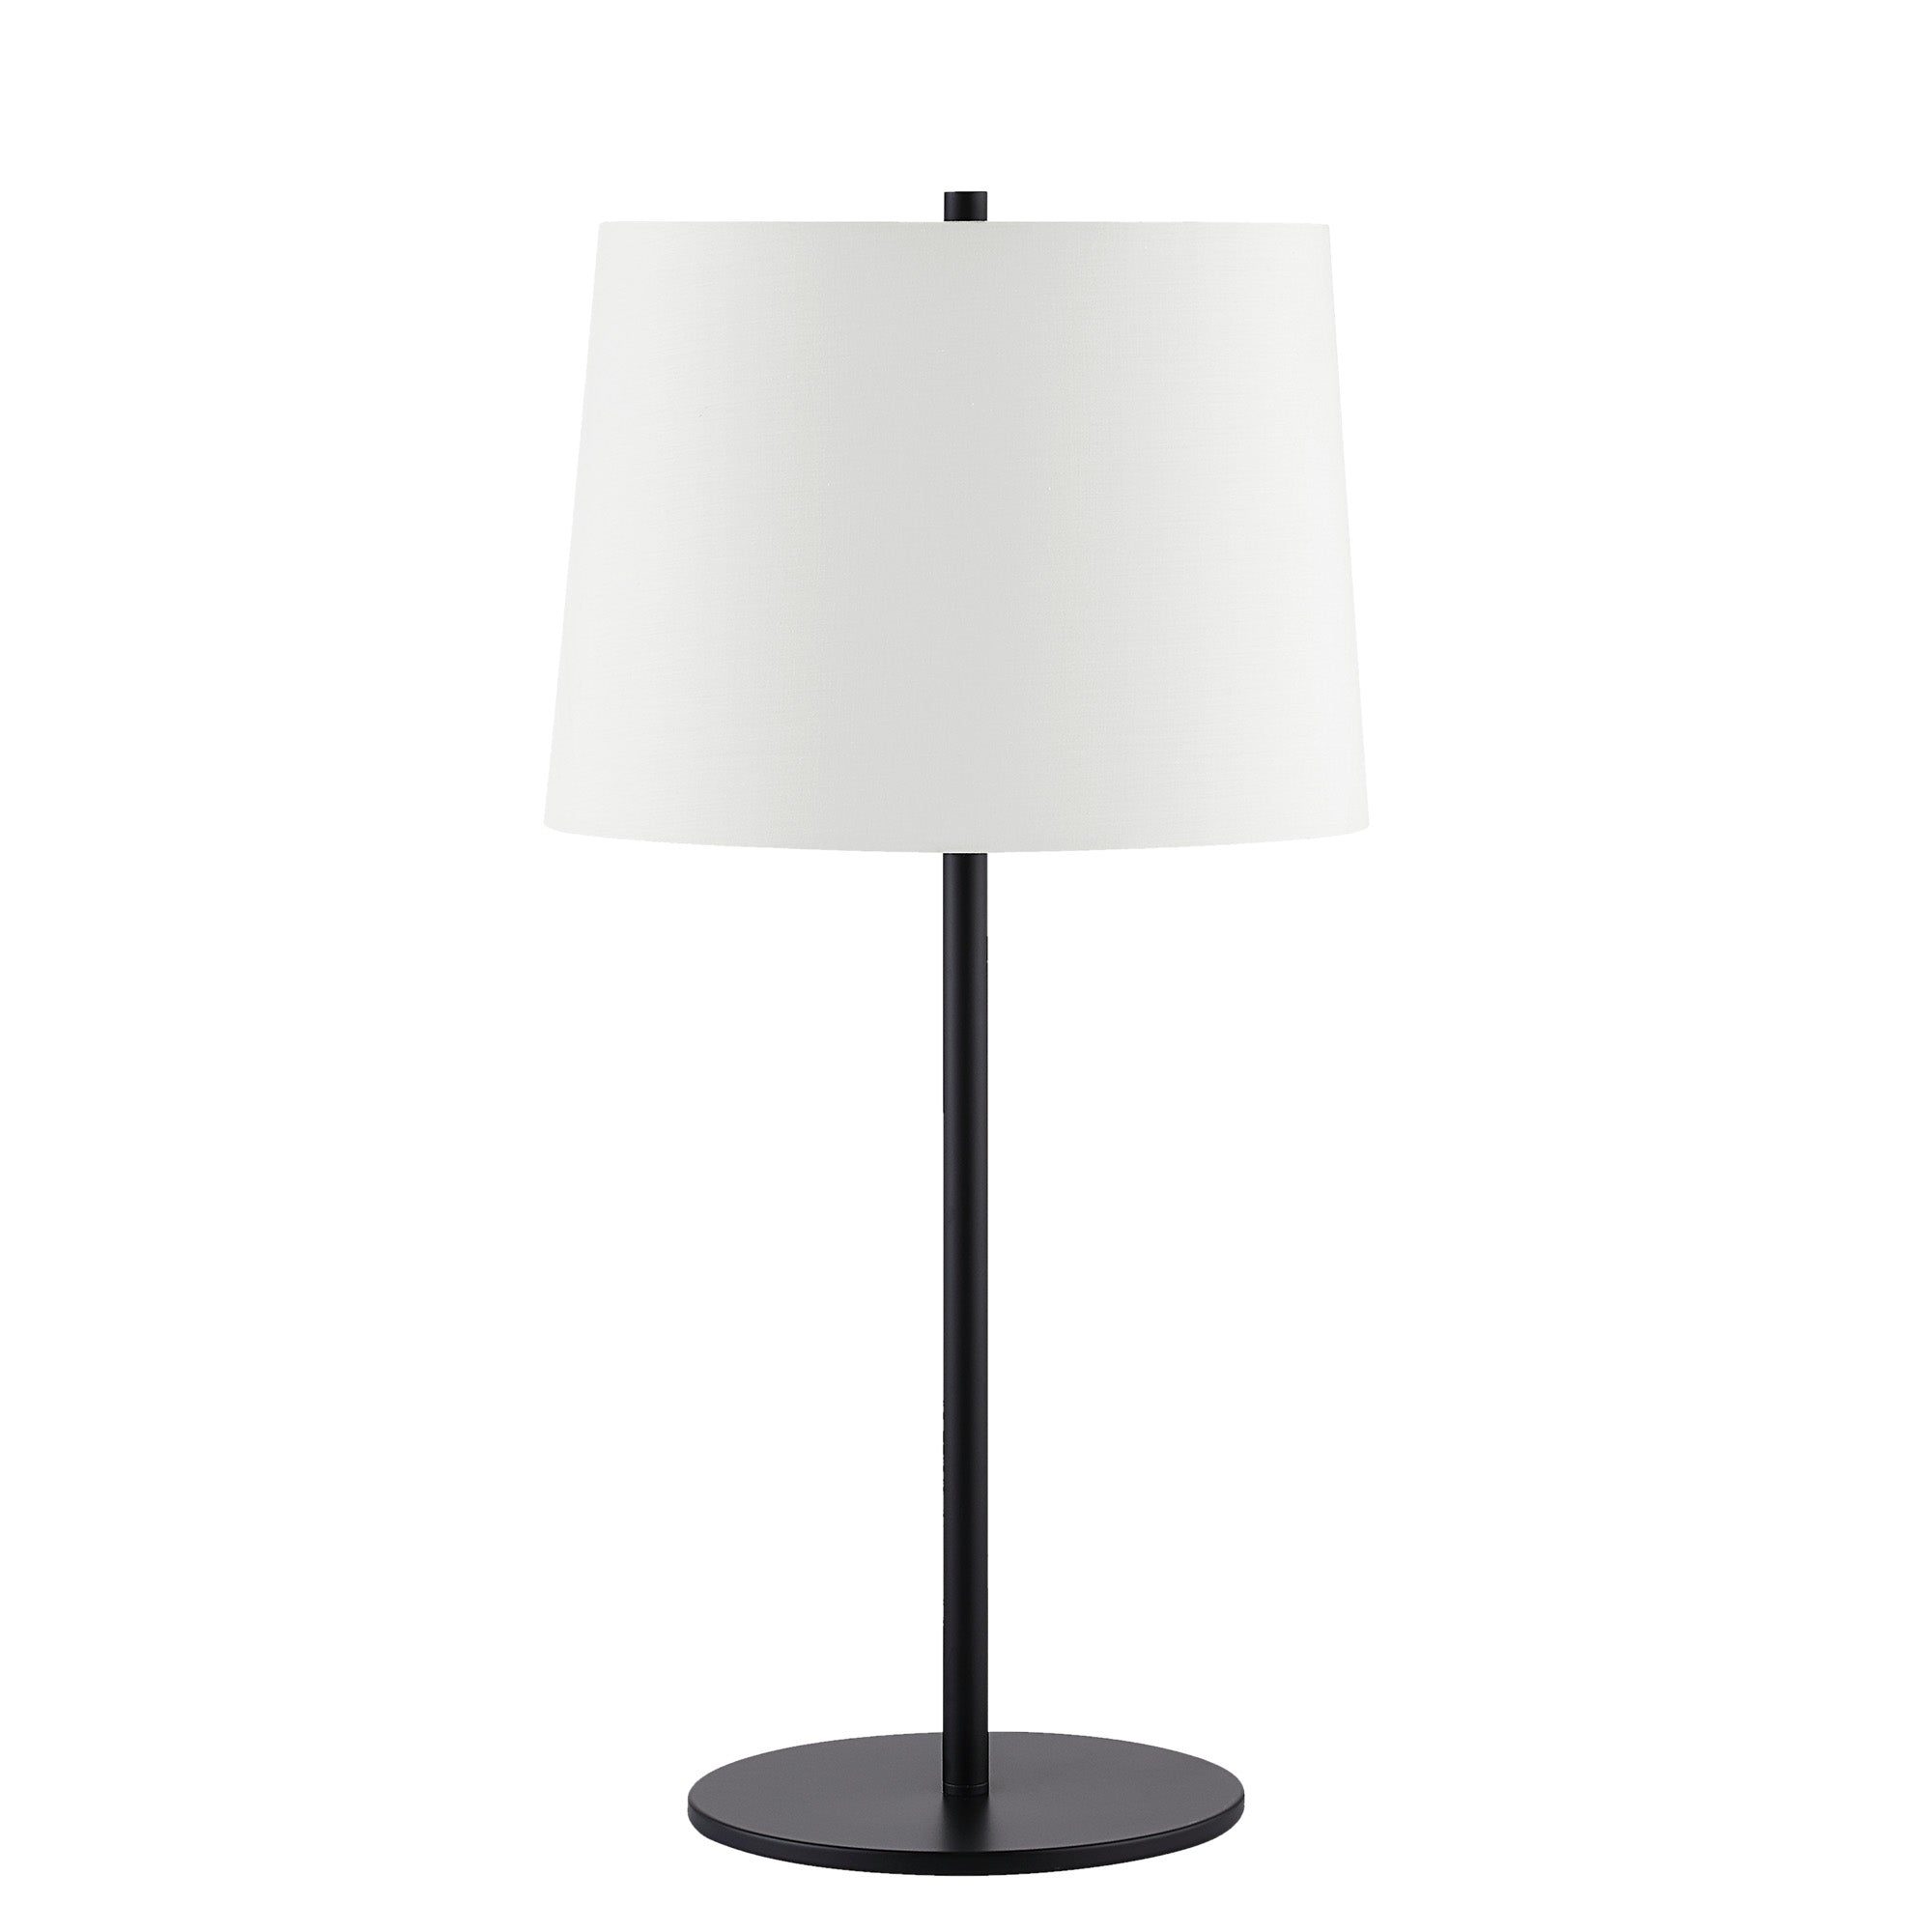 Renwil - NINO Table Lamp - LPT1209 - Black